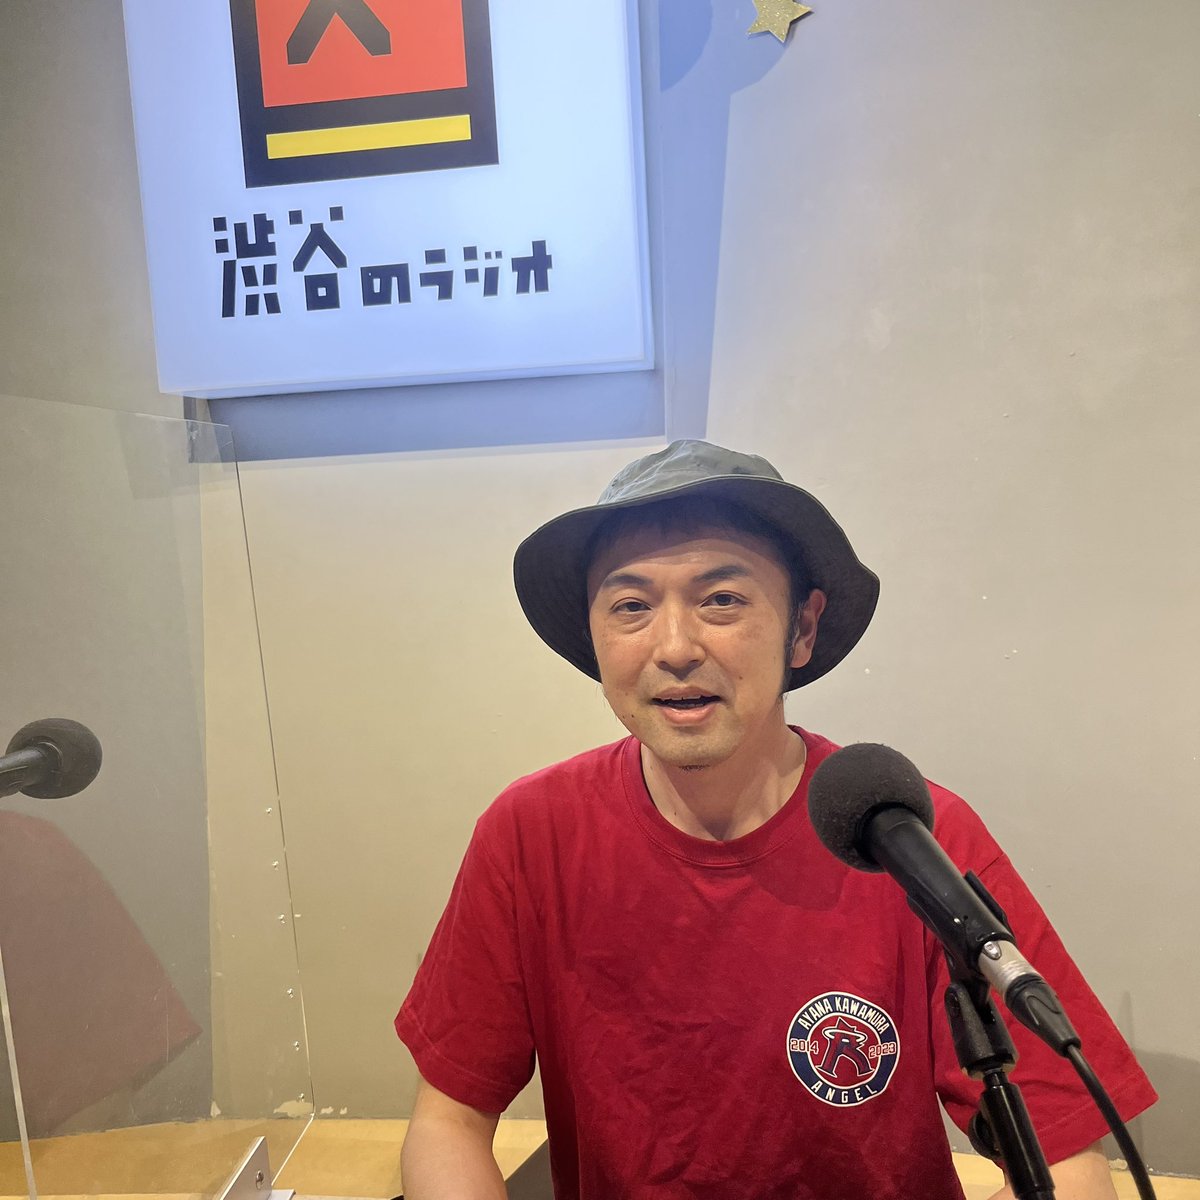 #ラジオコンシェルジュ はじまりました!!
本日は番組初となる、ゲストなしでの放送です✨
#渋谷のラジオ